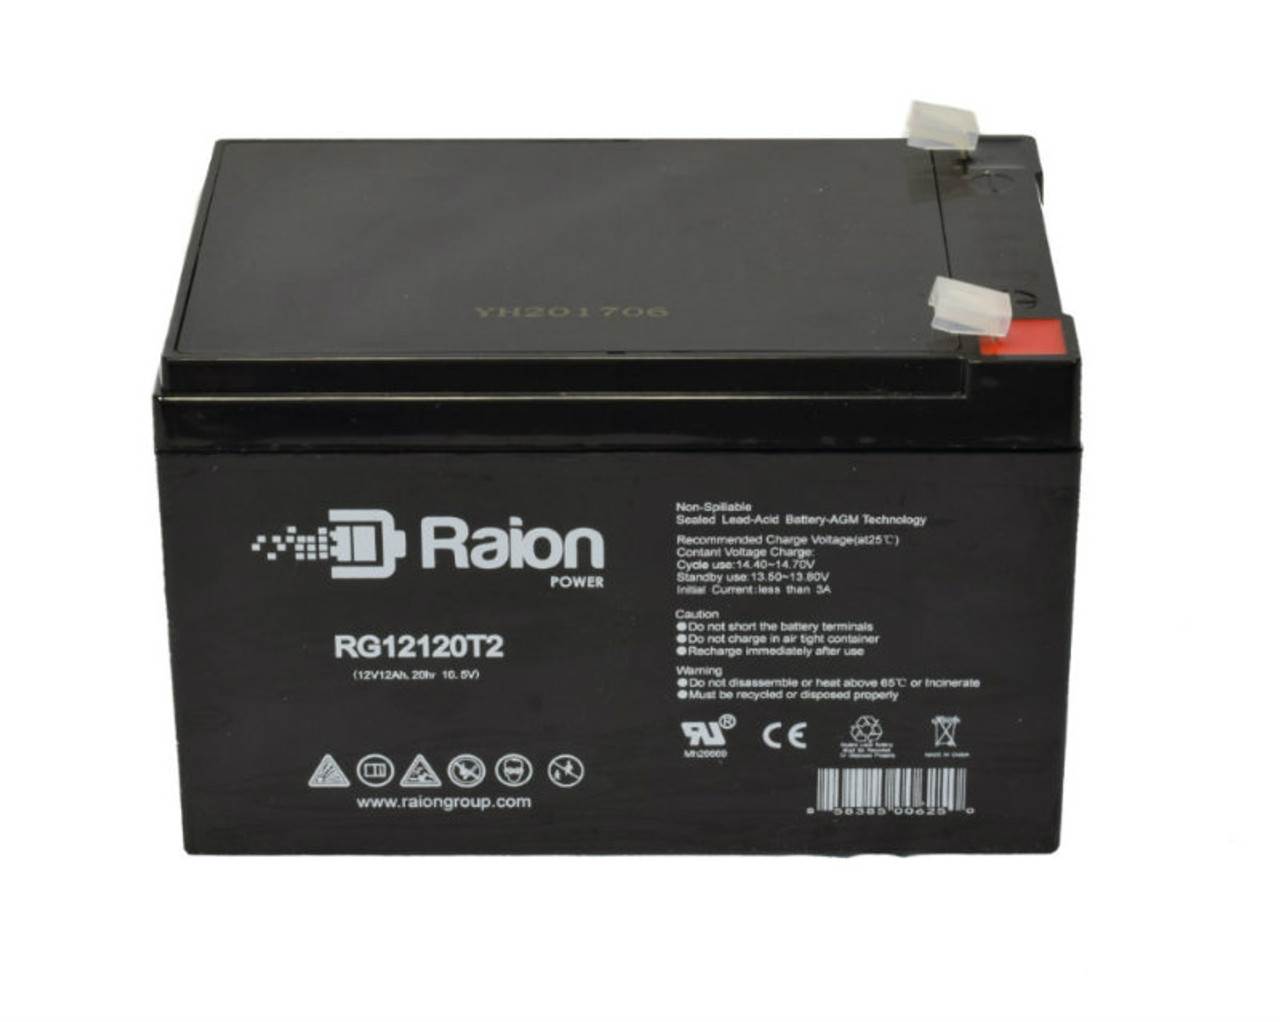 Raion Power RG12120T2 SLA Battery for Zip'r Traveler 4-Wheel